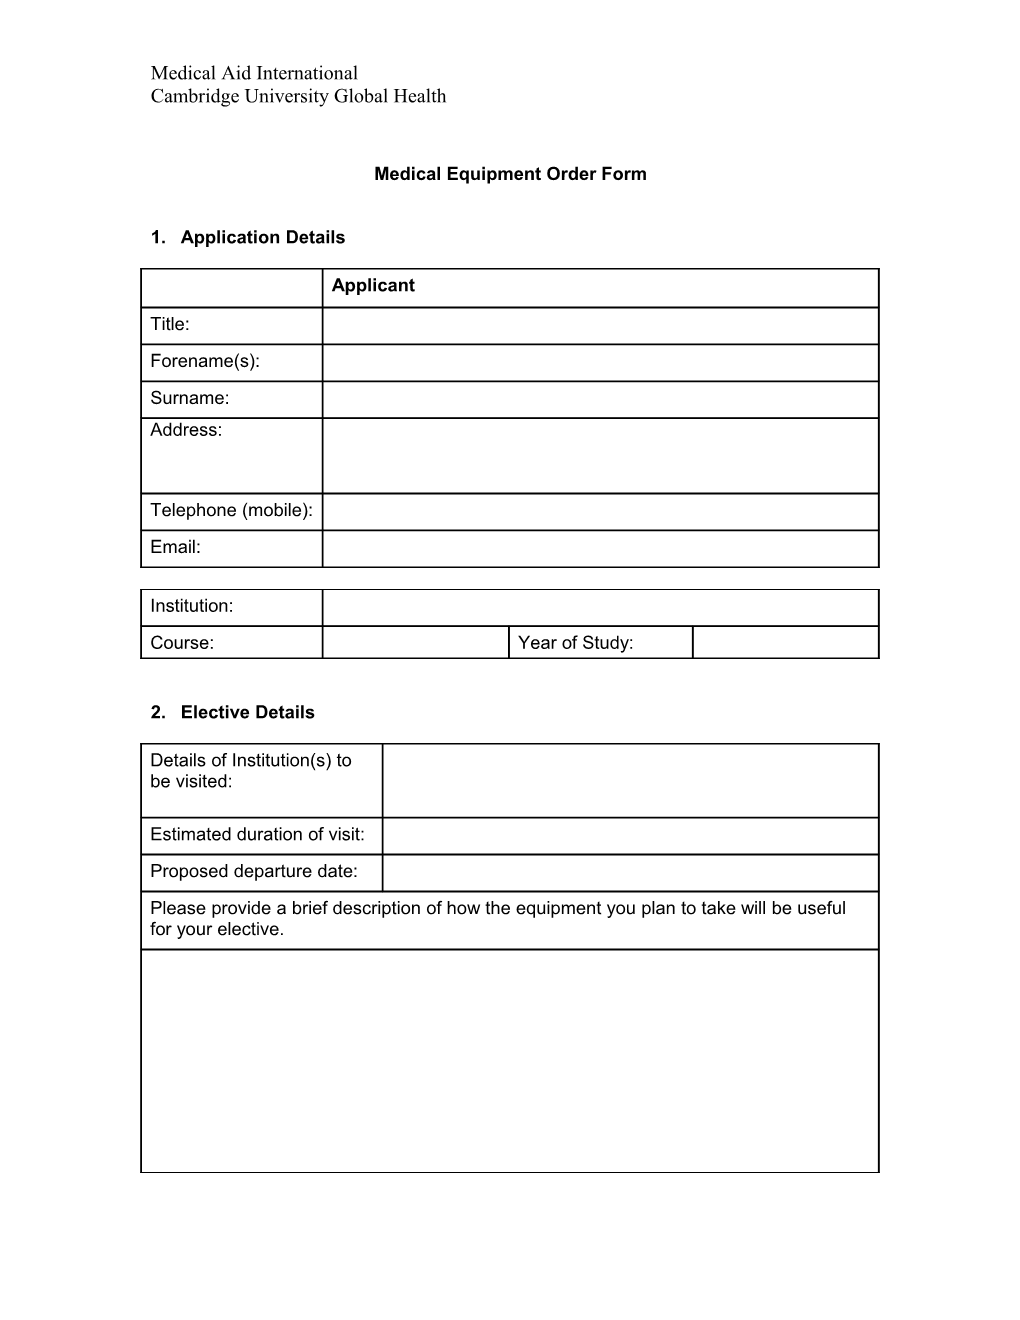 Medical Equipment Order Form